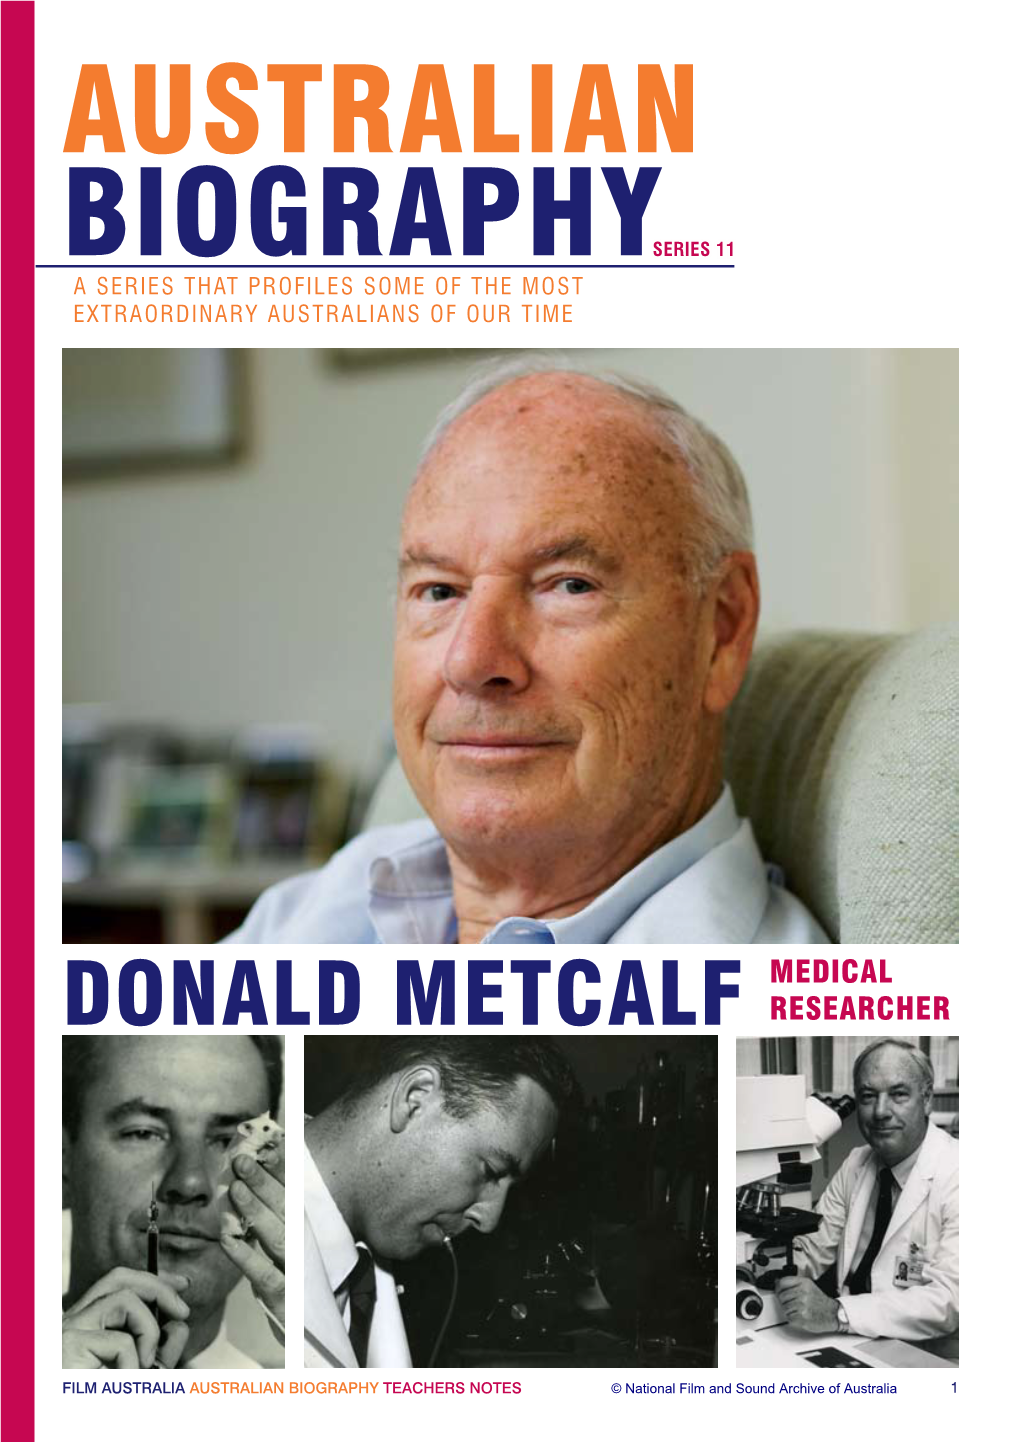 Donald Metcalf Researcher